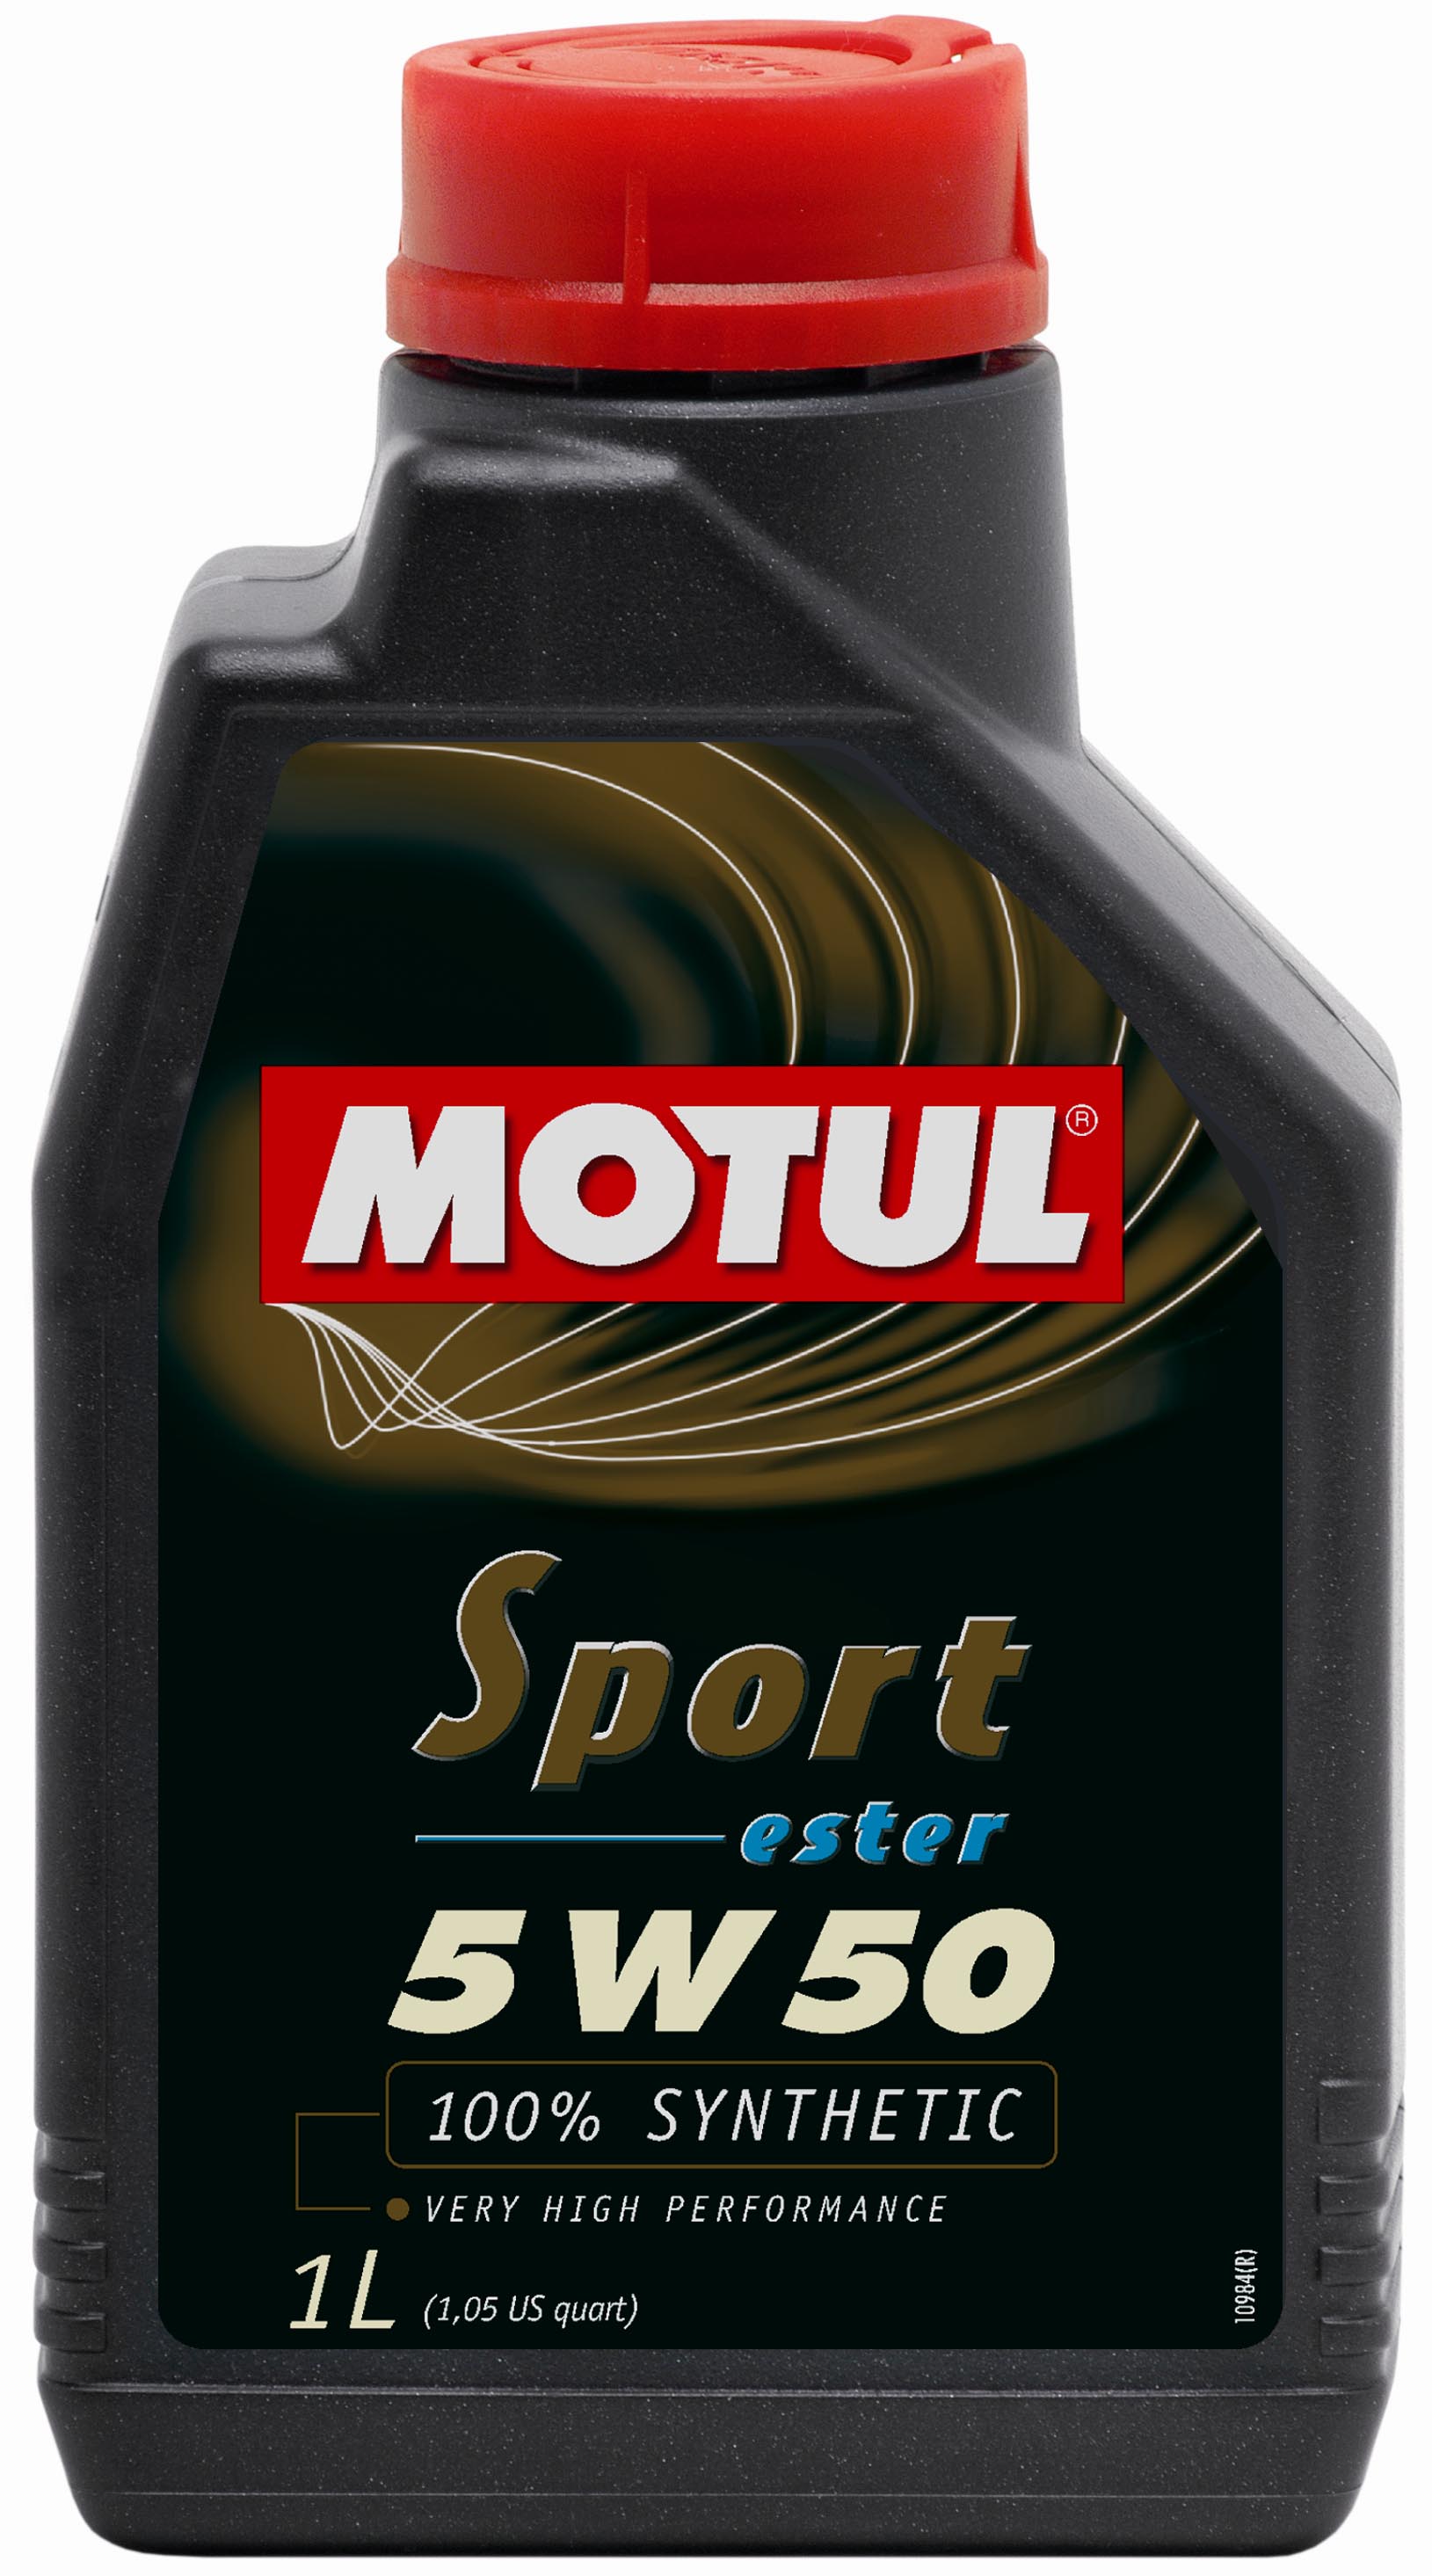 MOTUL SPORT 5W50 - 1L - Synthetic Engine Oil